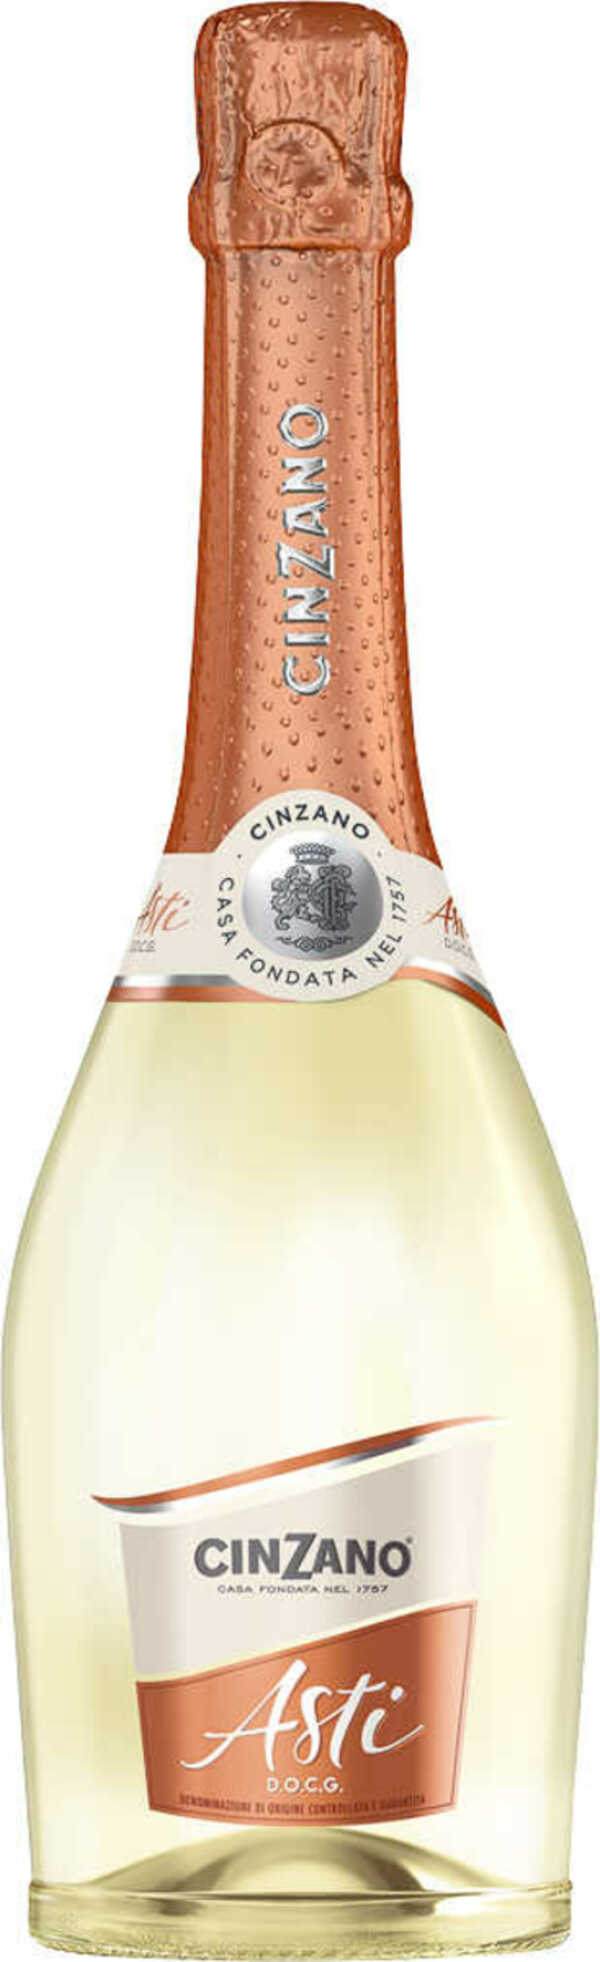 CINZANO Asti von Kaufland ansehen! | Champagner & Sekt